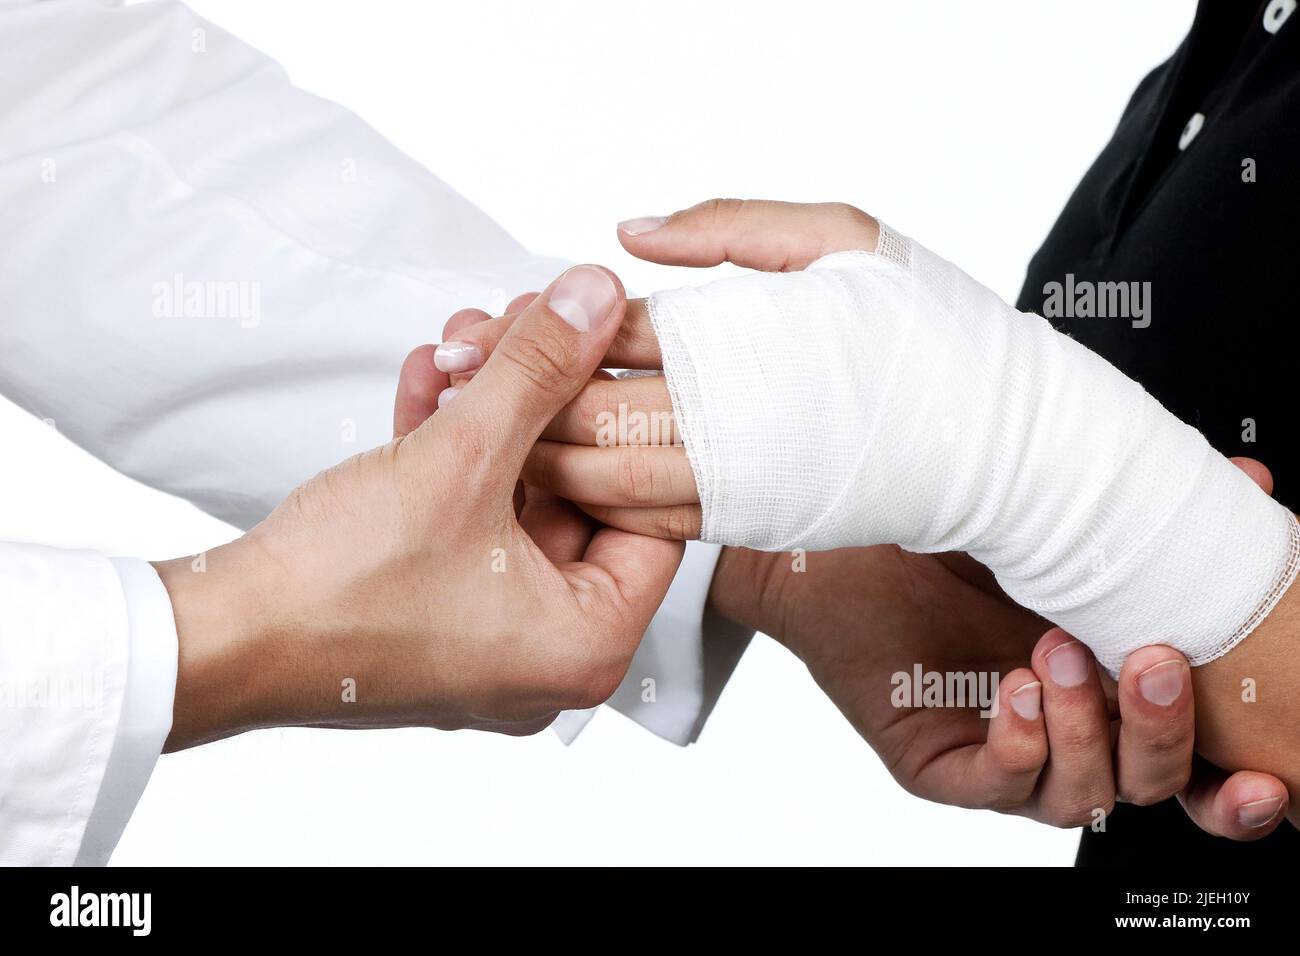 Der Arm einer Frau wird im Krankenhaus verbunden, Handgelenk verstaucht, Stock Photo